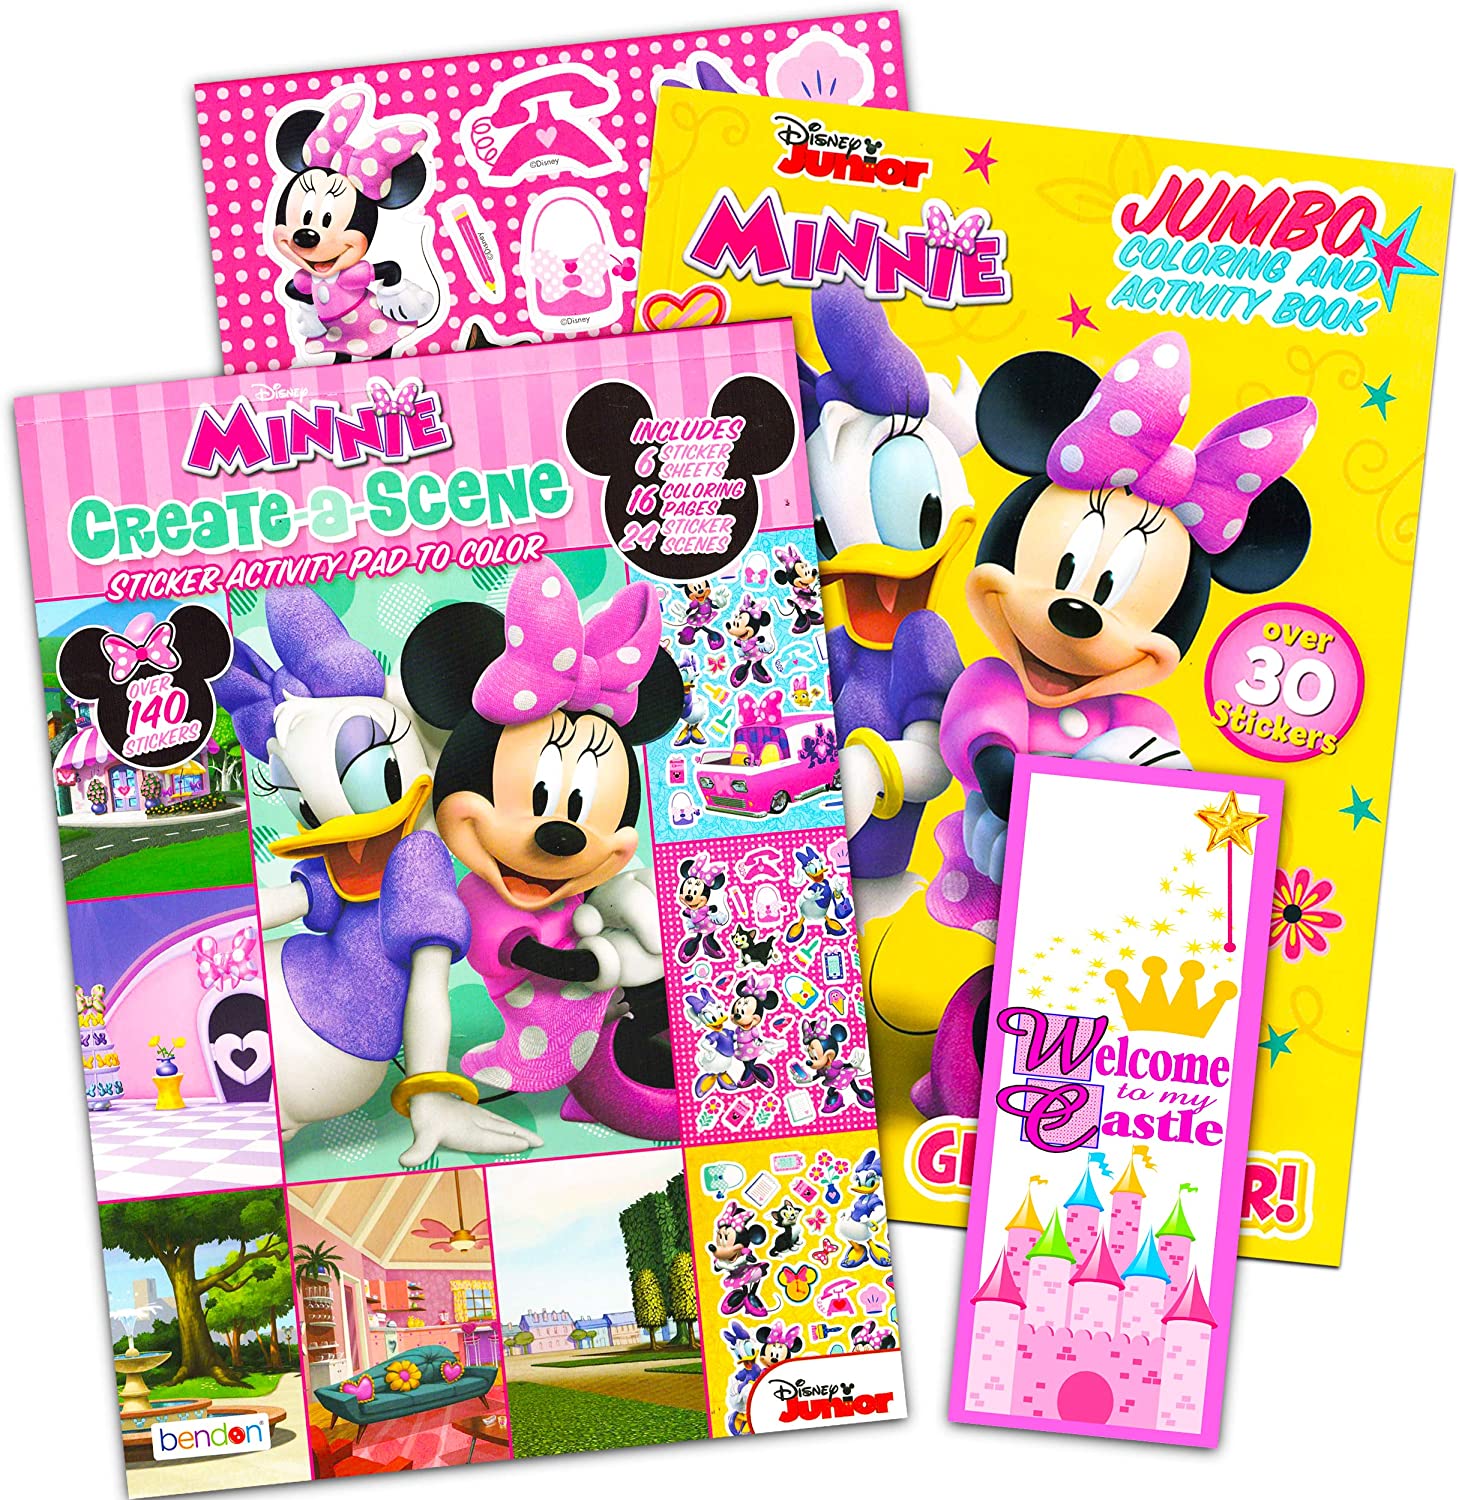 Stickers Minnie bébé - Color-stickers